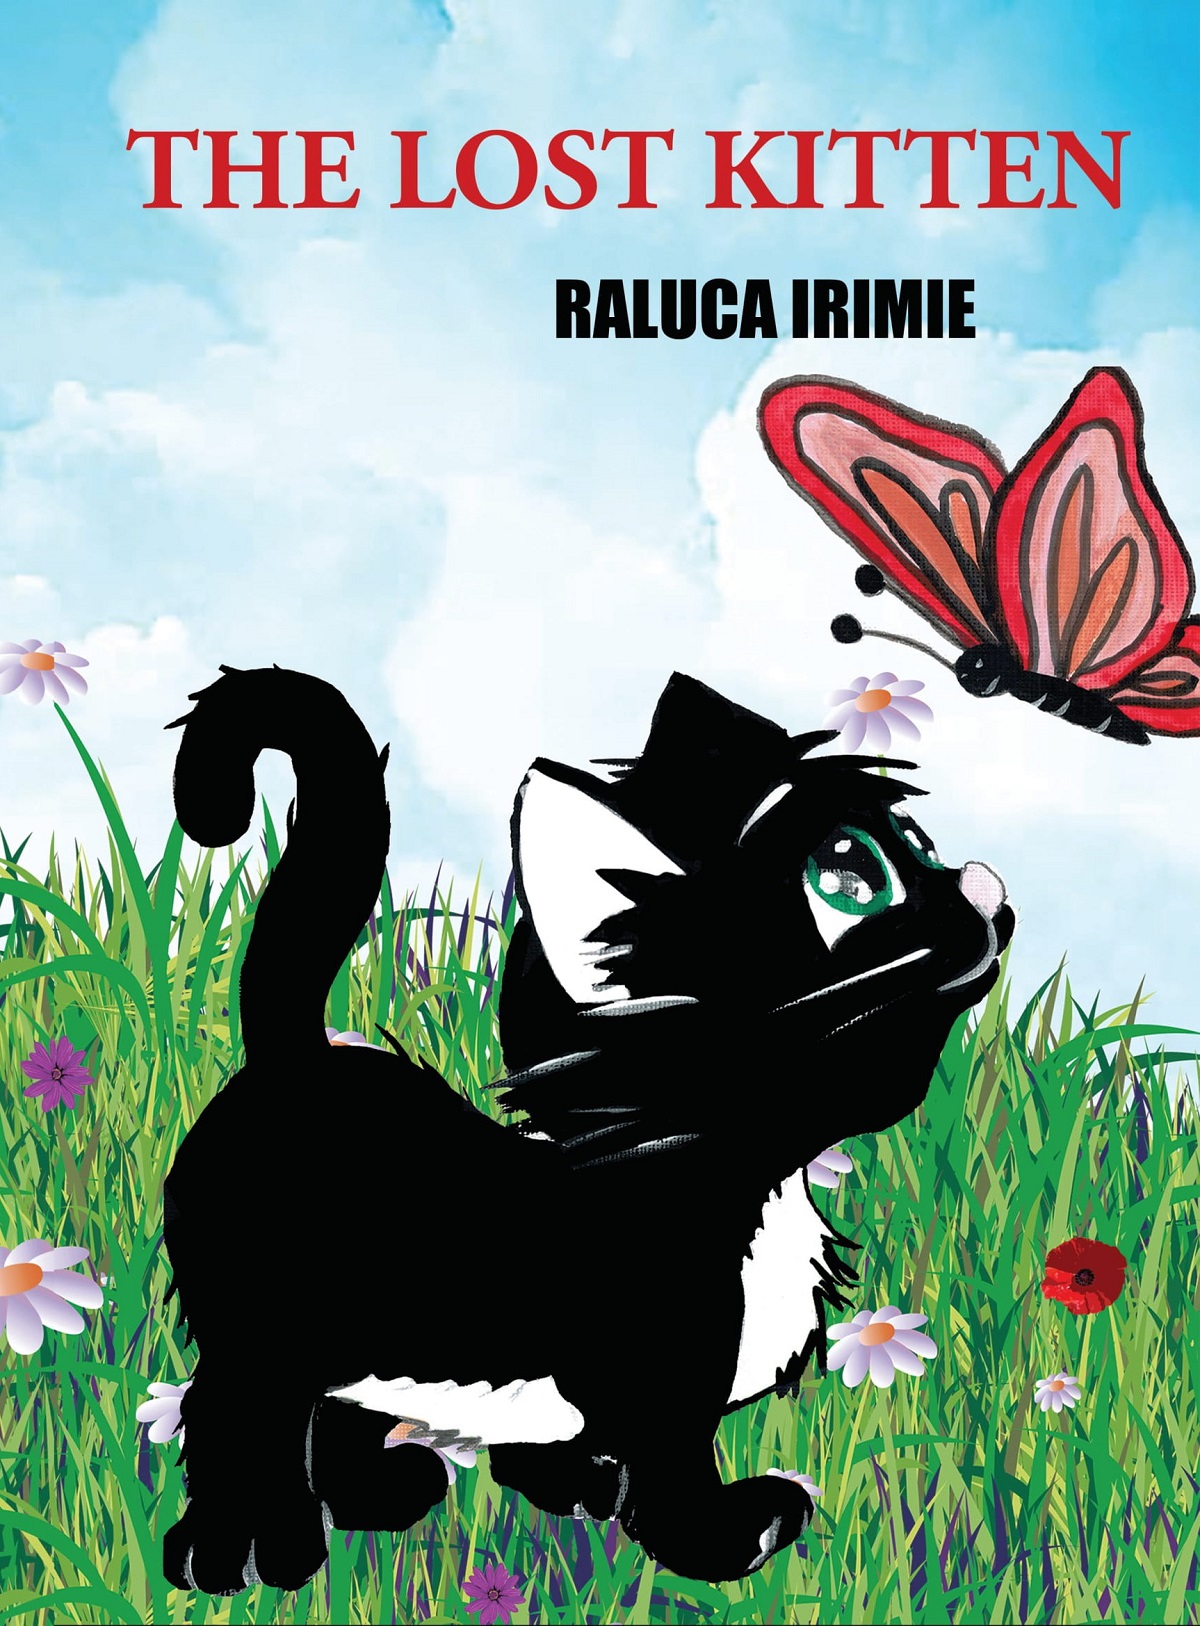 The lost kitten - Raluca Irimie